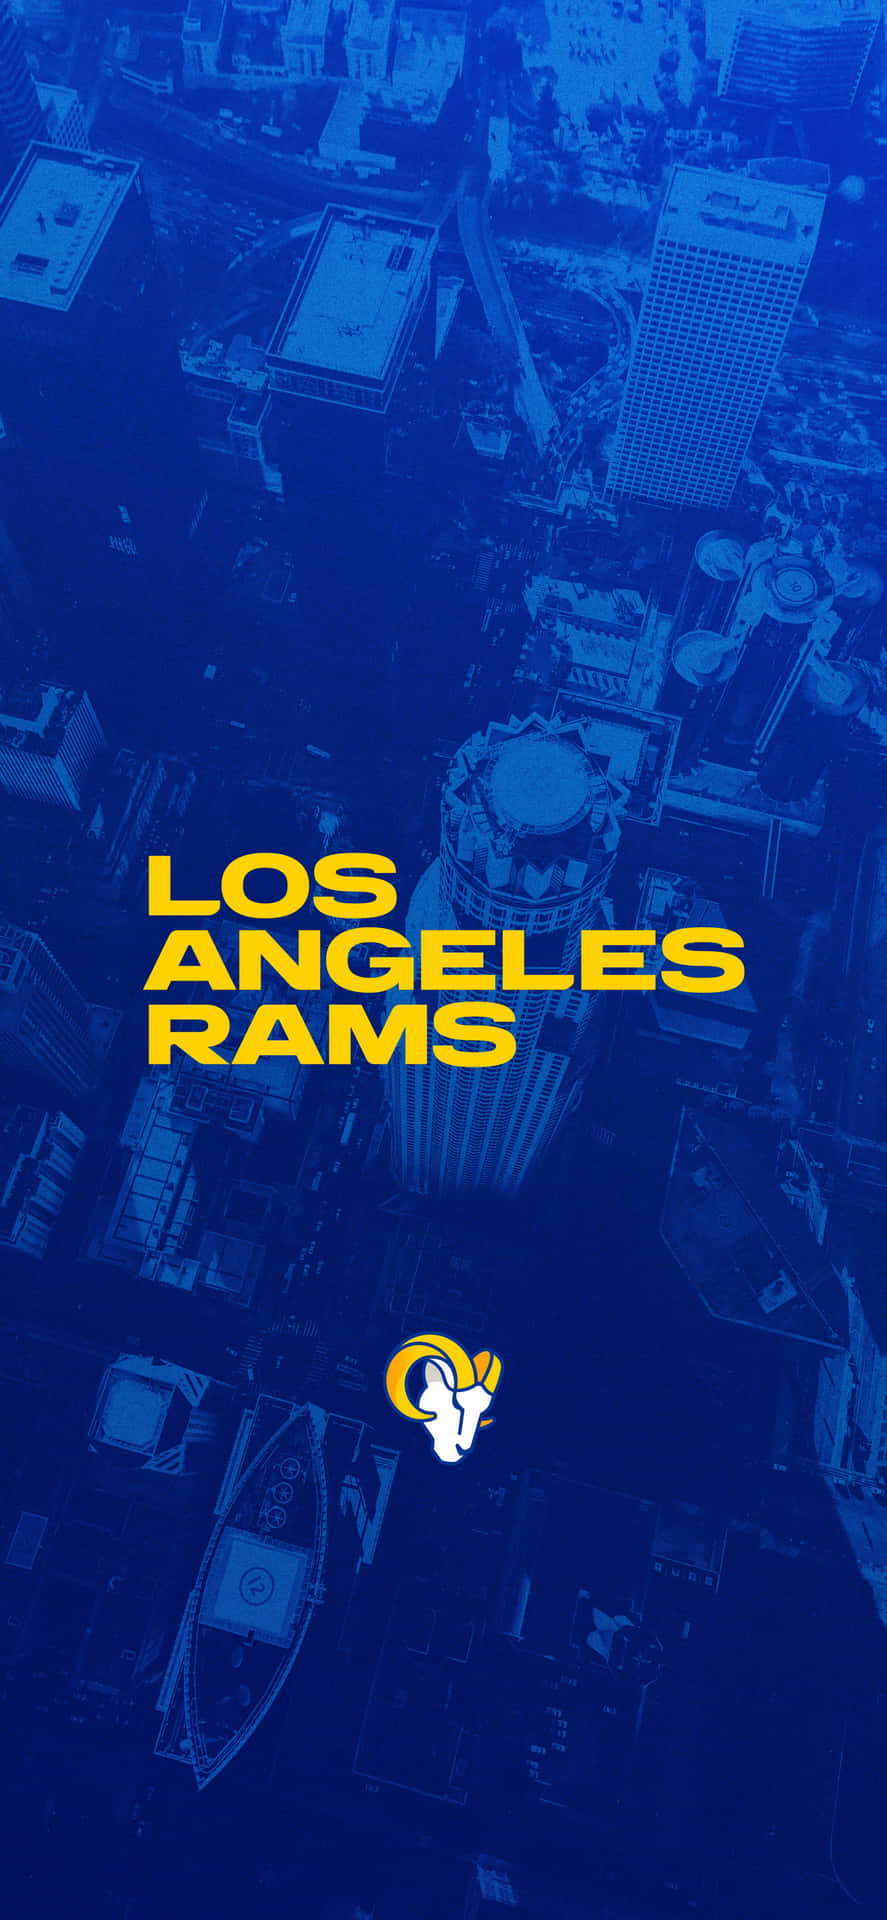 Enblå Och Gul Bakgrund Med Orden Los Angeles Rams. Wallpaper